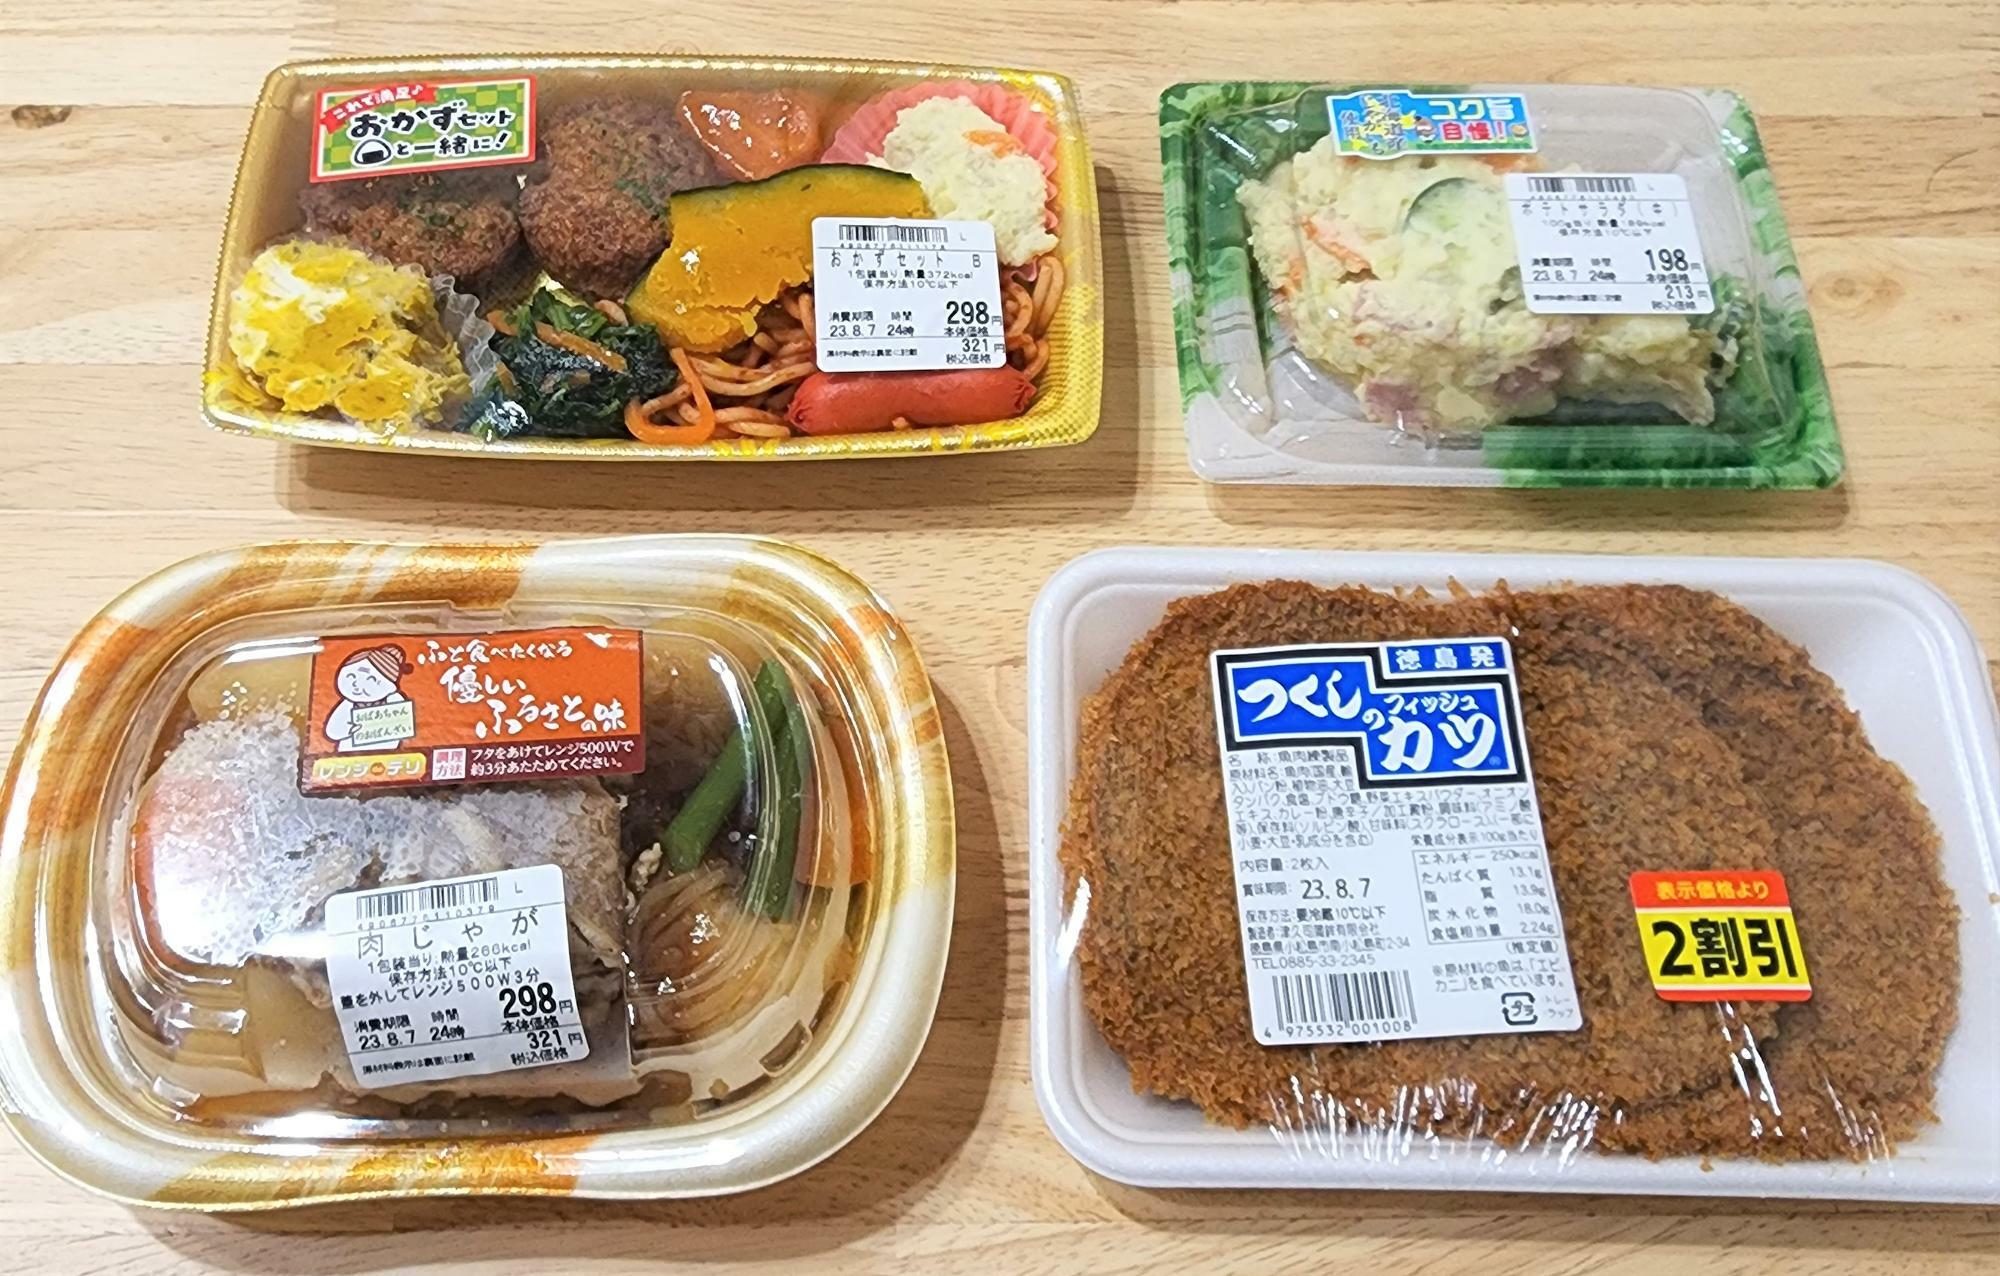 徳島市沖浜にオープンした「くすりのレデイ沖浜店」で購入した惣菜類とつくしのフィッシュカツ。